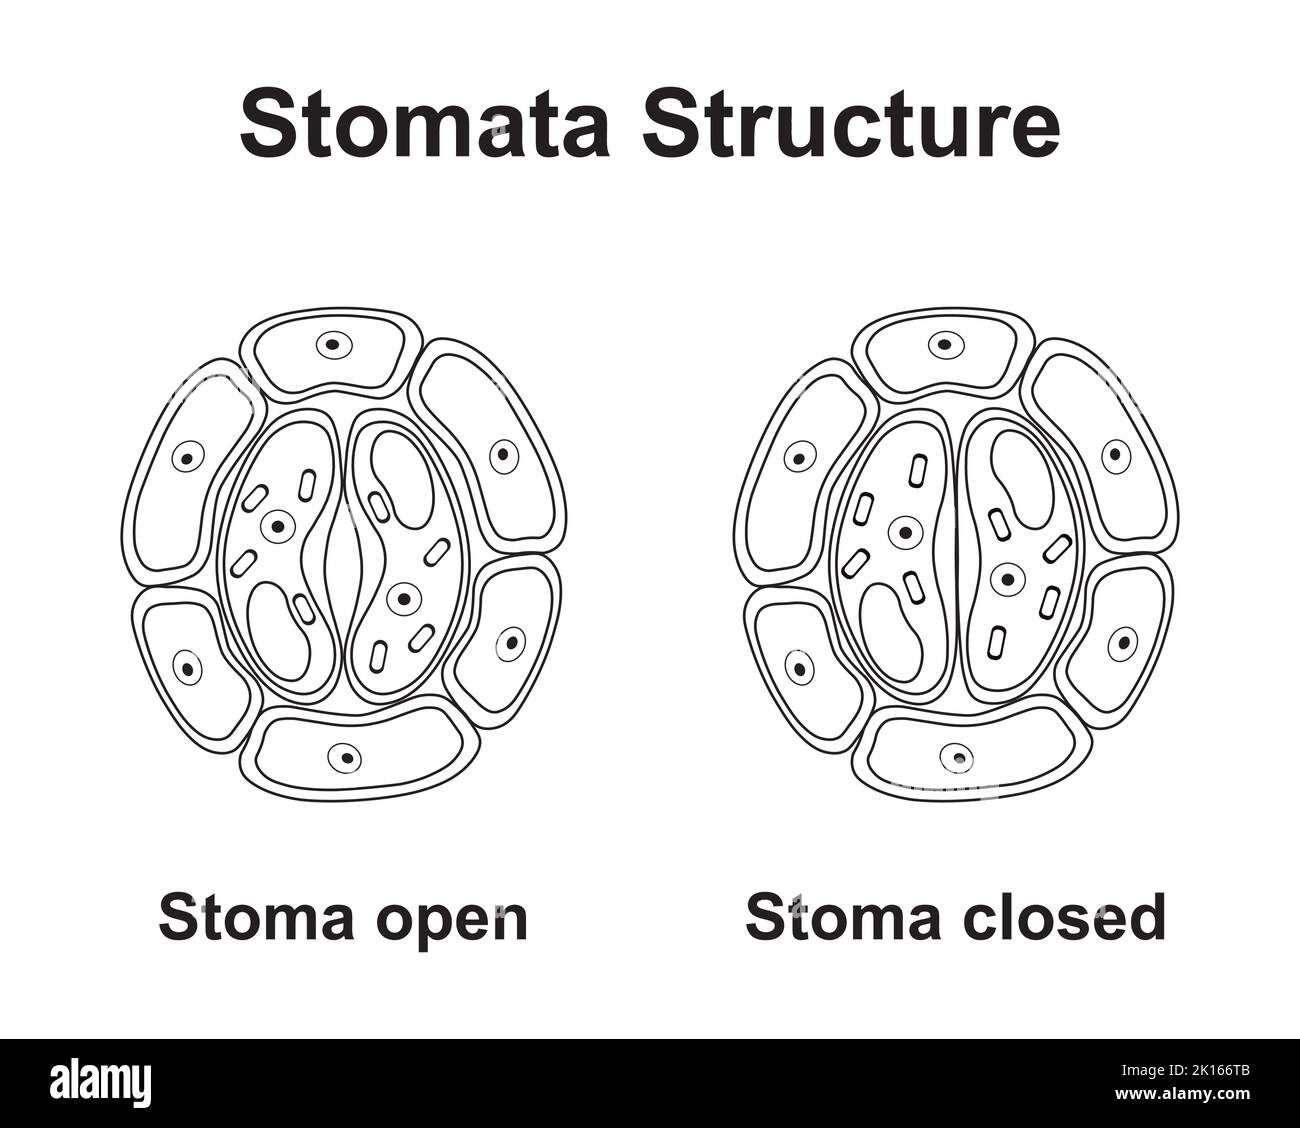 Wissenschaftliche Gestaltung der Stomata-Struktur. Bunte Symbole. Vektorgrafik. Stock Vektor